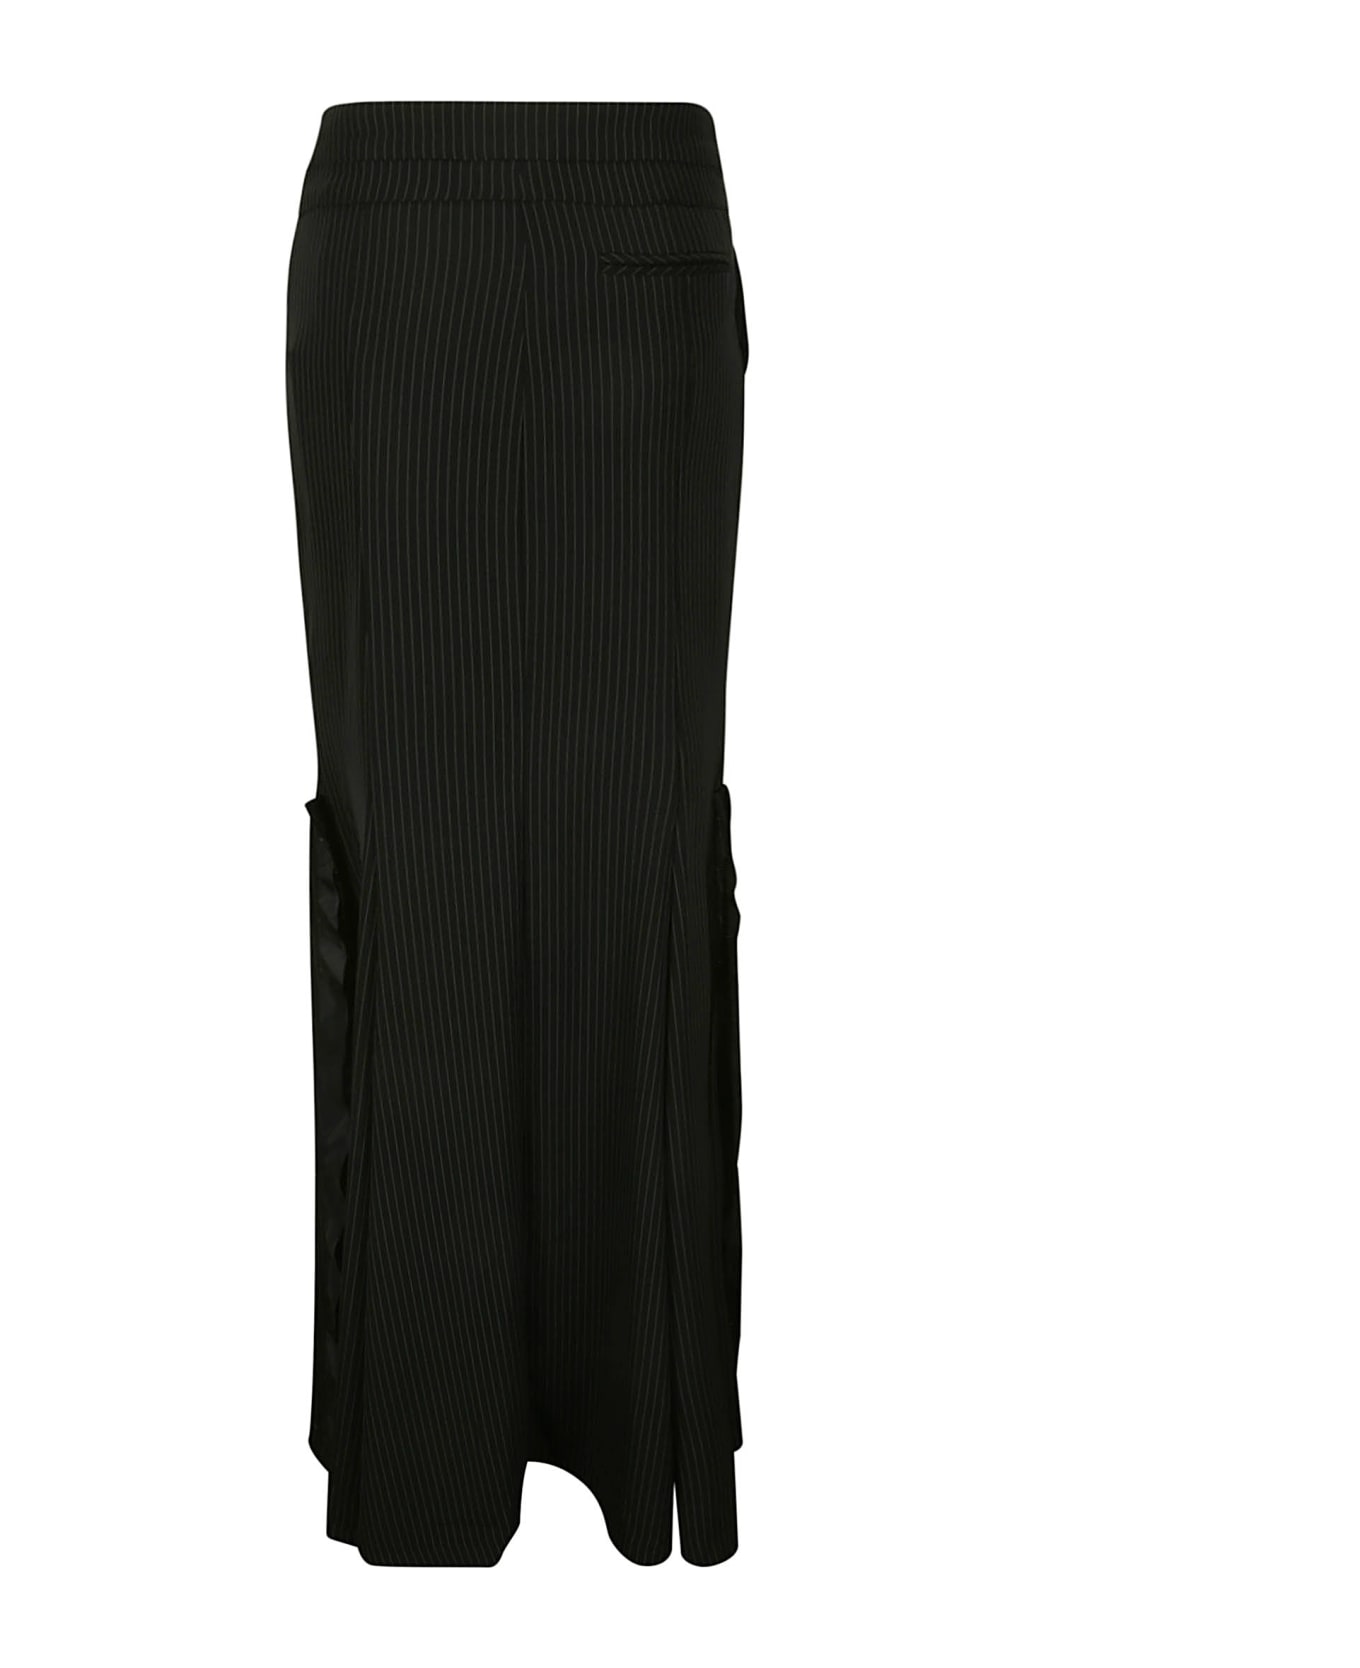 Ottolinger Mermaid Suit Skirt - BLACK PINSTRIPE スカート